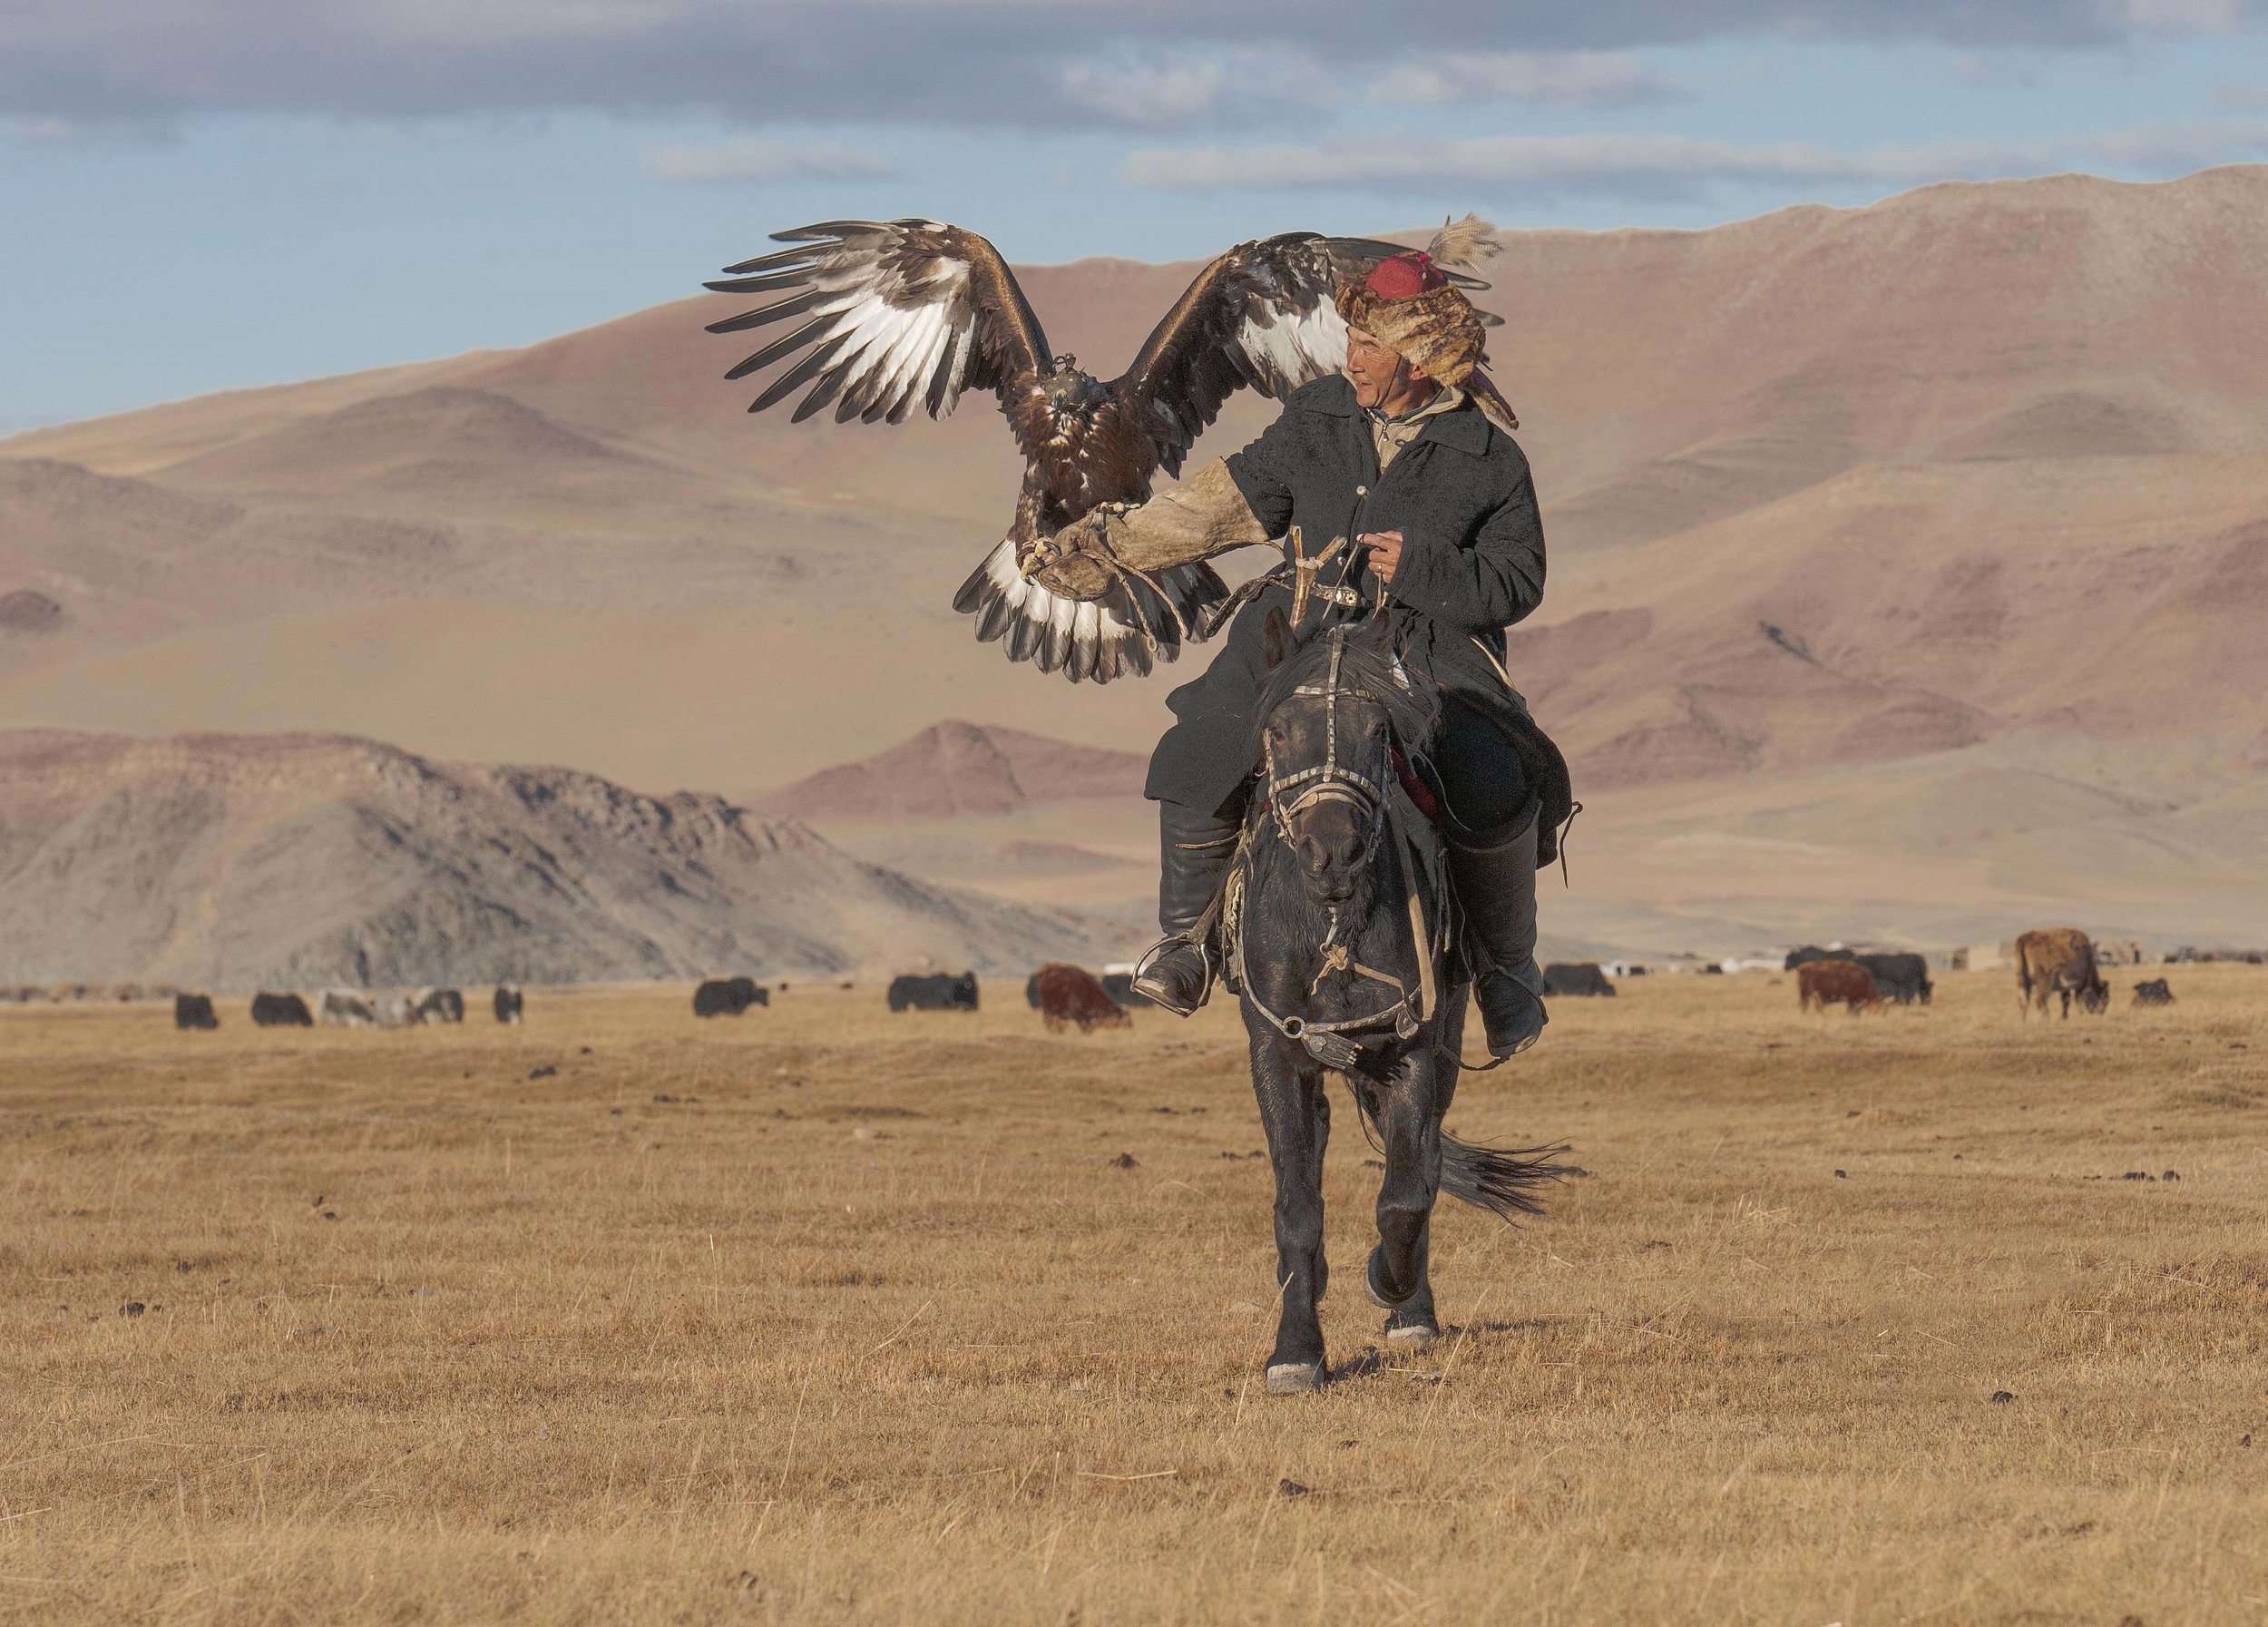 kazakh eagle hunter on horseback.jpg